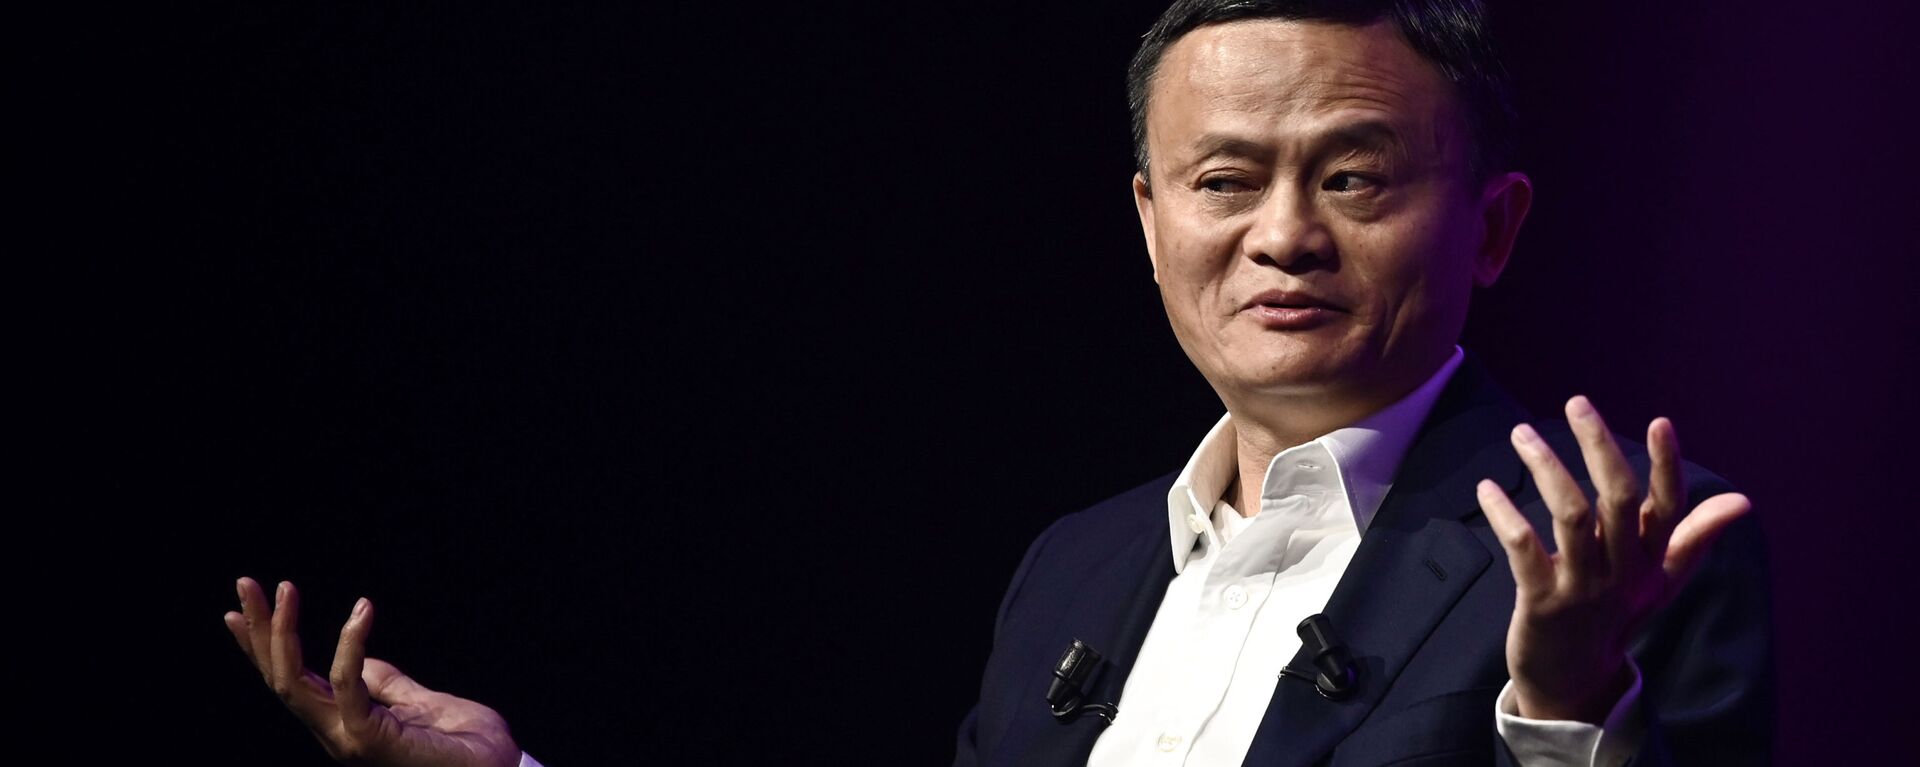 El empresario chino Jack Ma, fundador de Alibaba - Sputnik Mundo, 1920, 22.01.2021